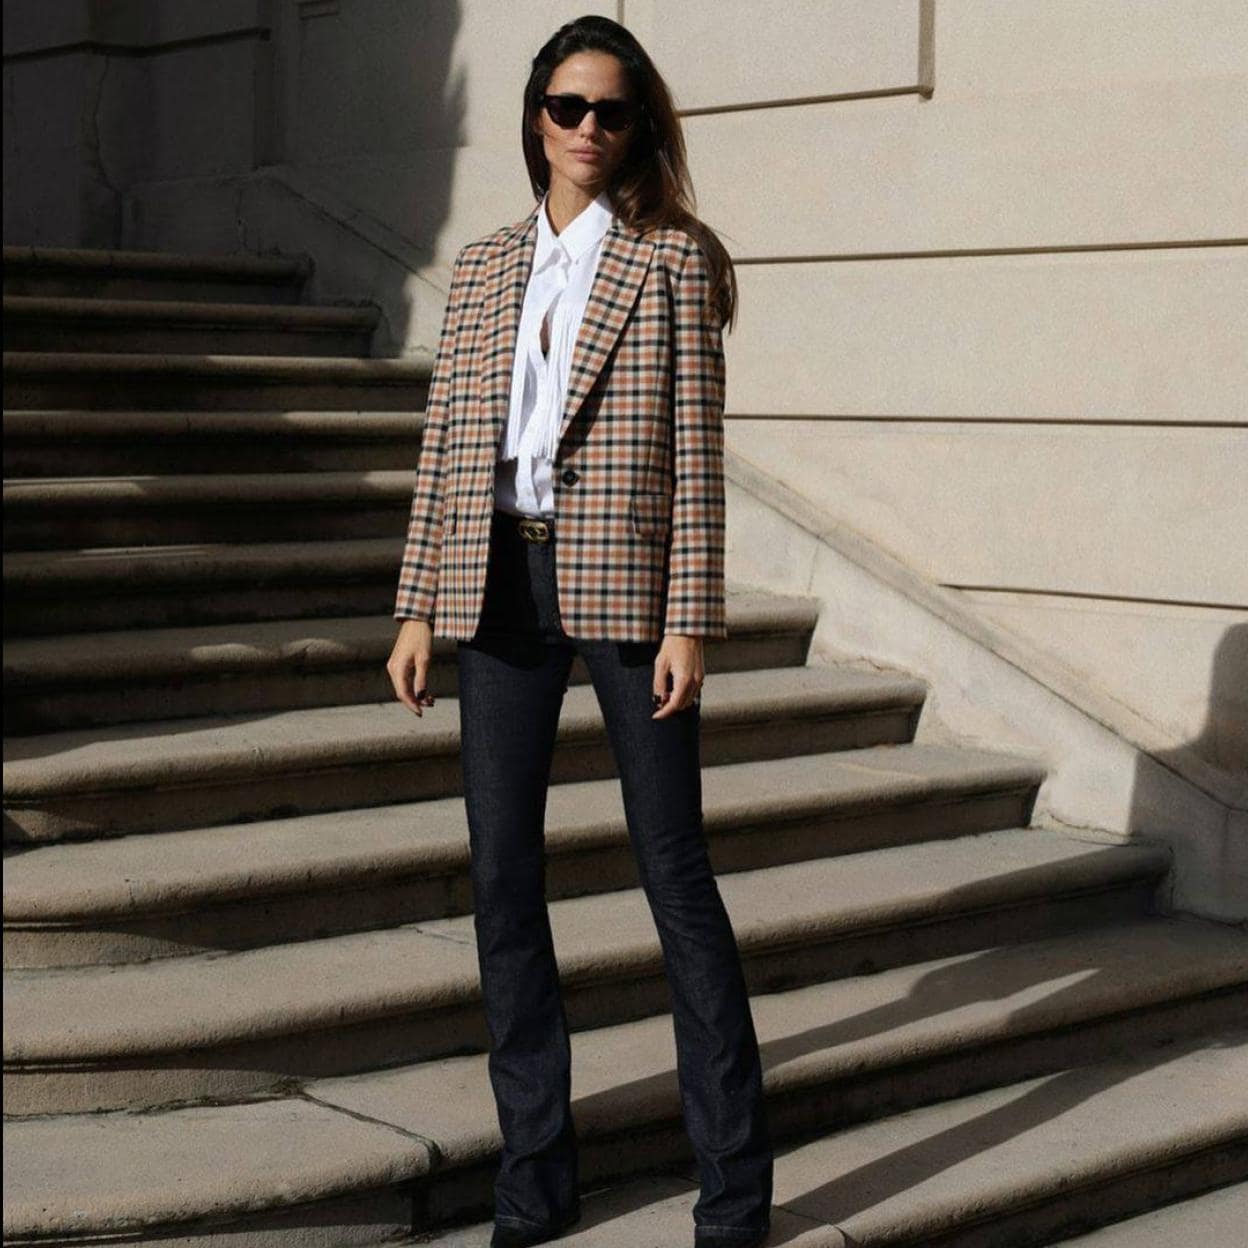 Las americanas de lana sofisticadas, básicas y cálidas que necesitas en tus looks de oficina invierno están en Massimo Dutti | Mujer Hoy